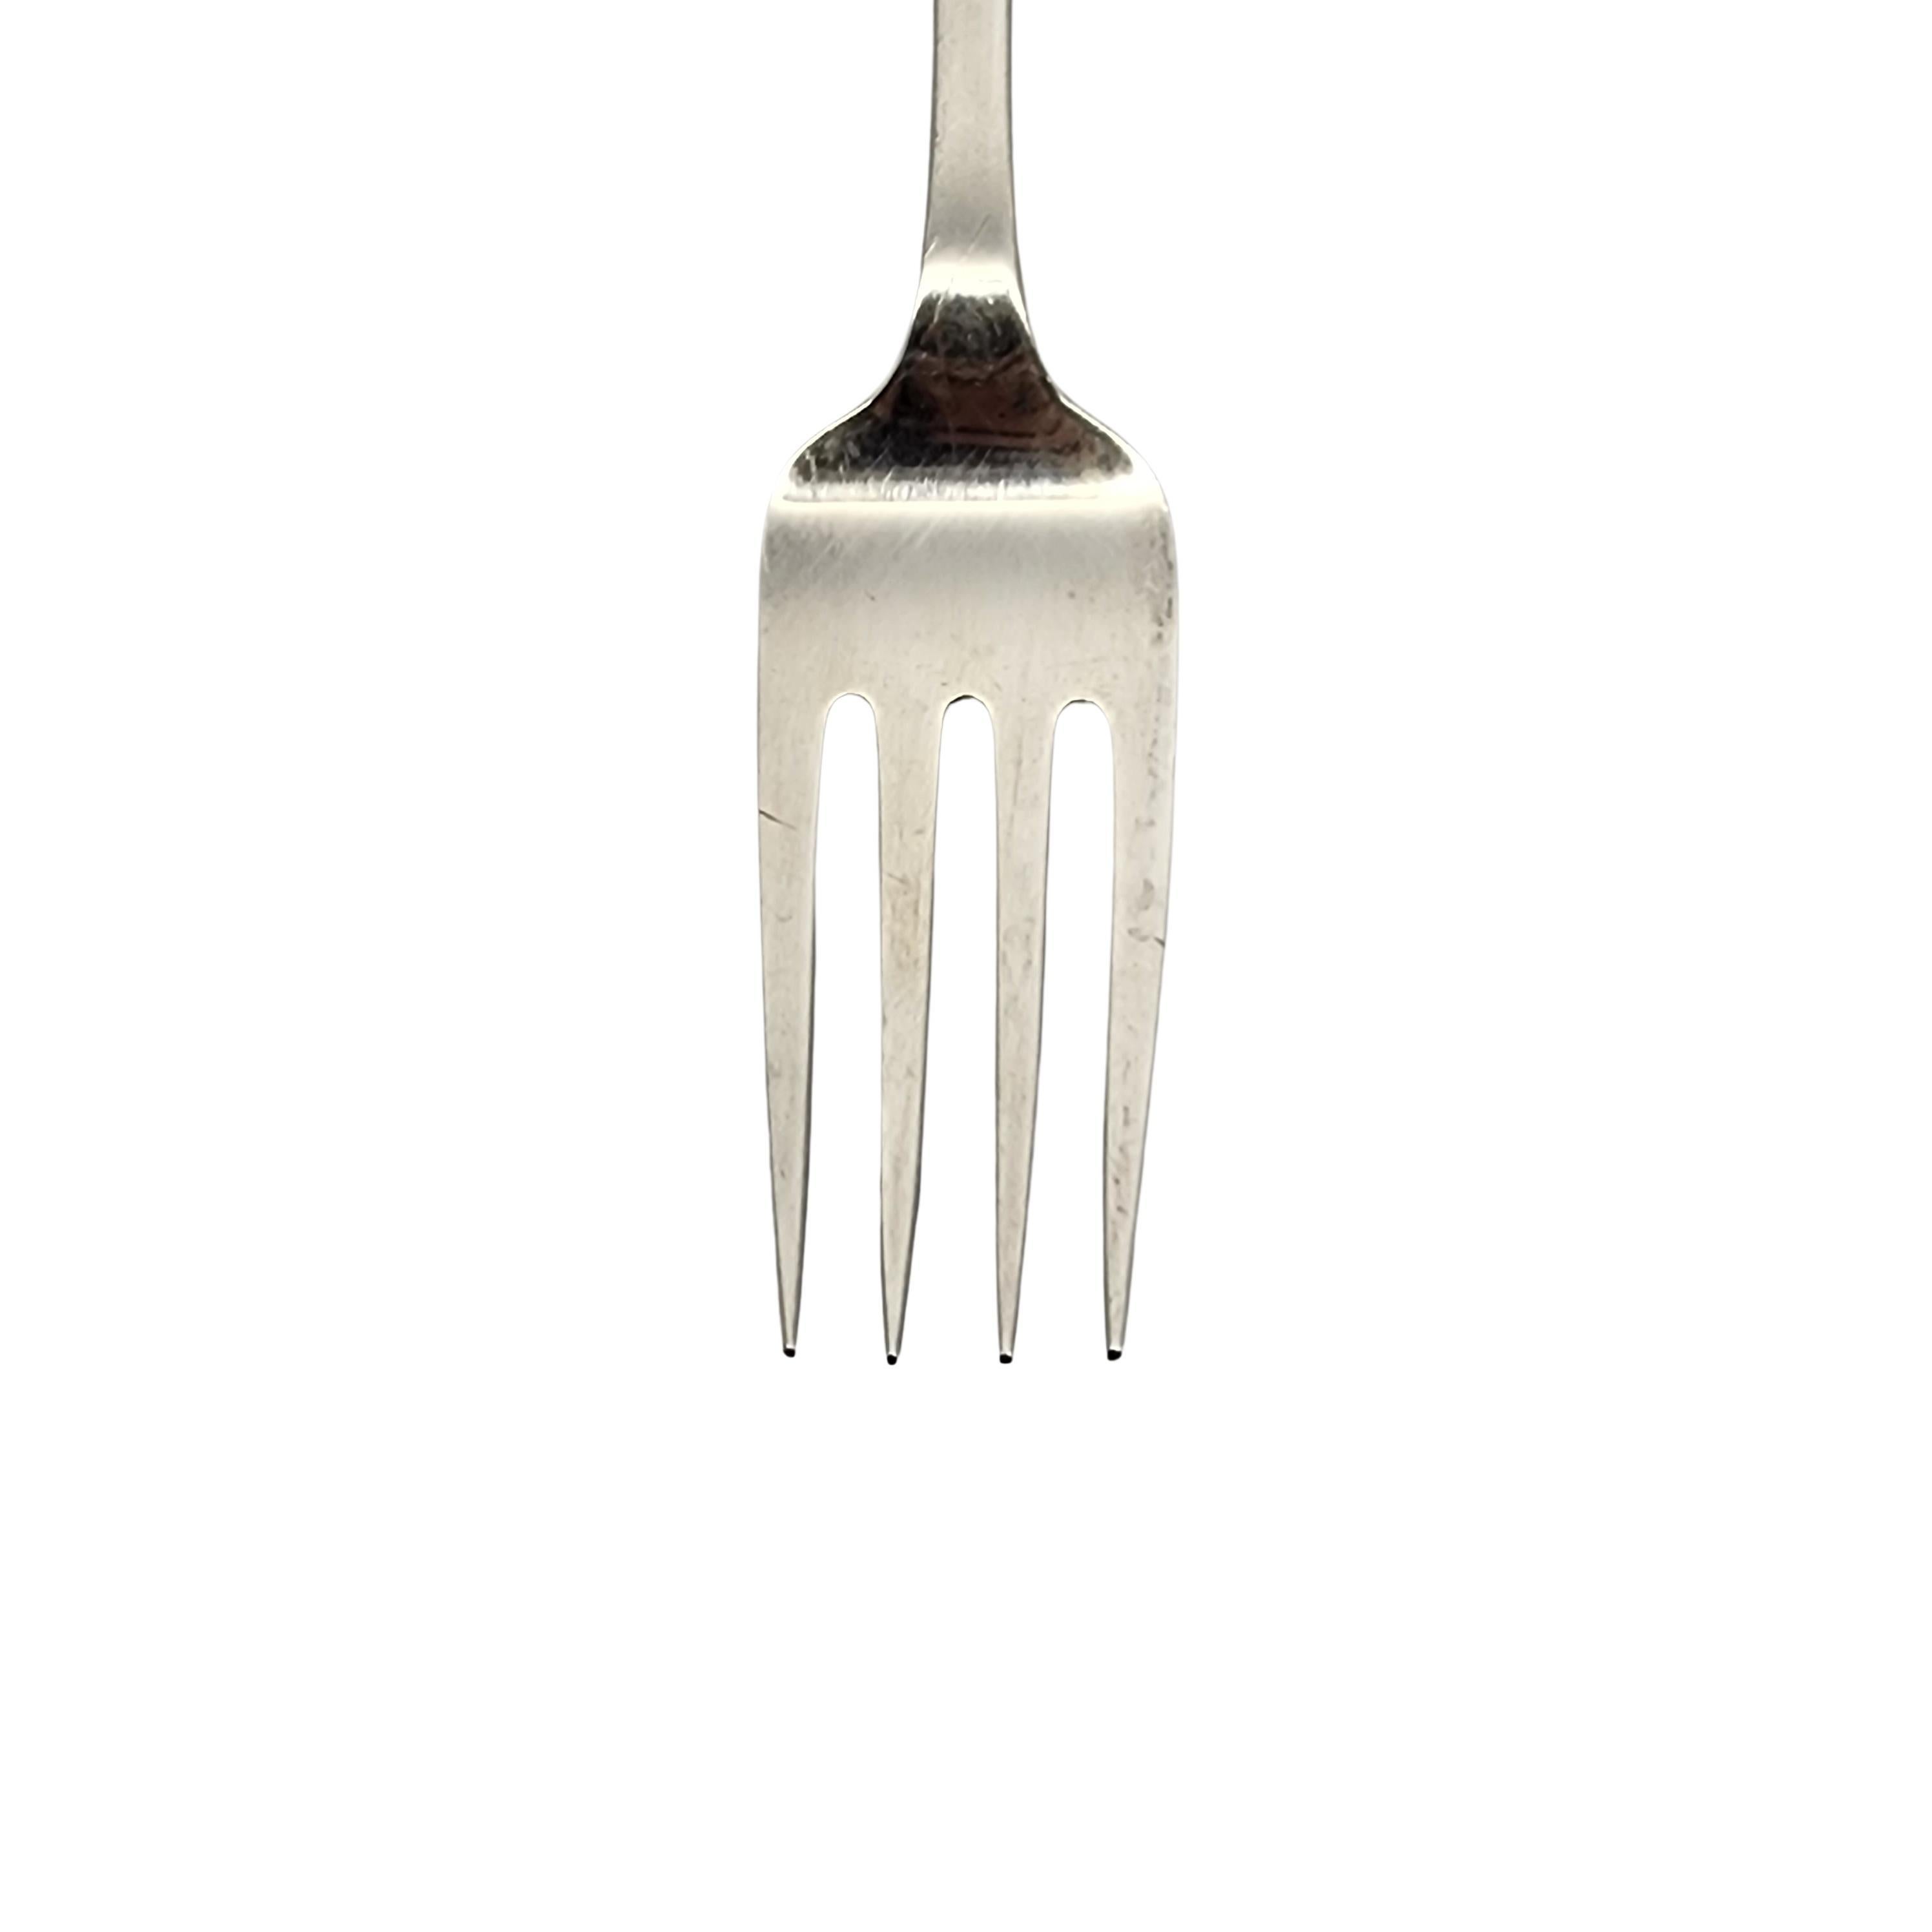 Tiffany & Co Flemish Sterling Silver Serving Fork 8 1/2